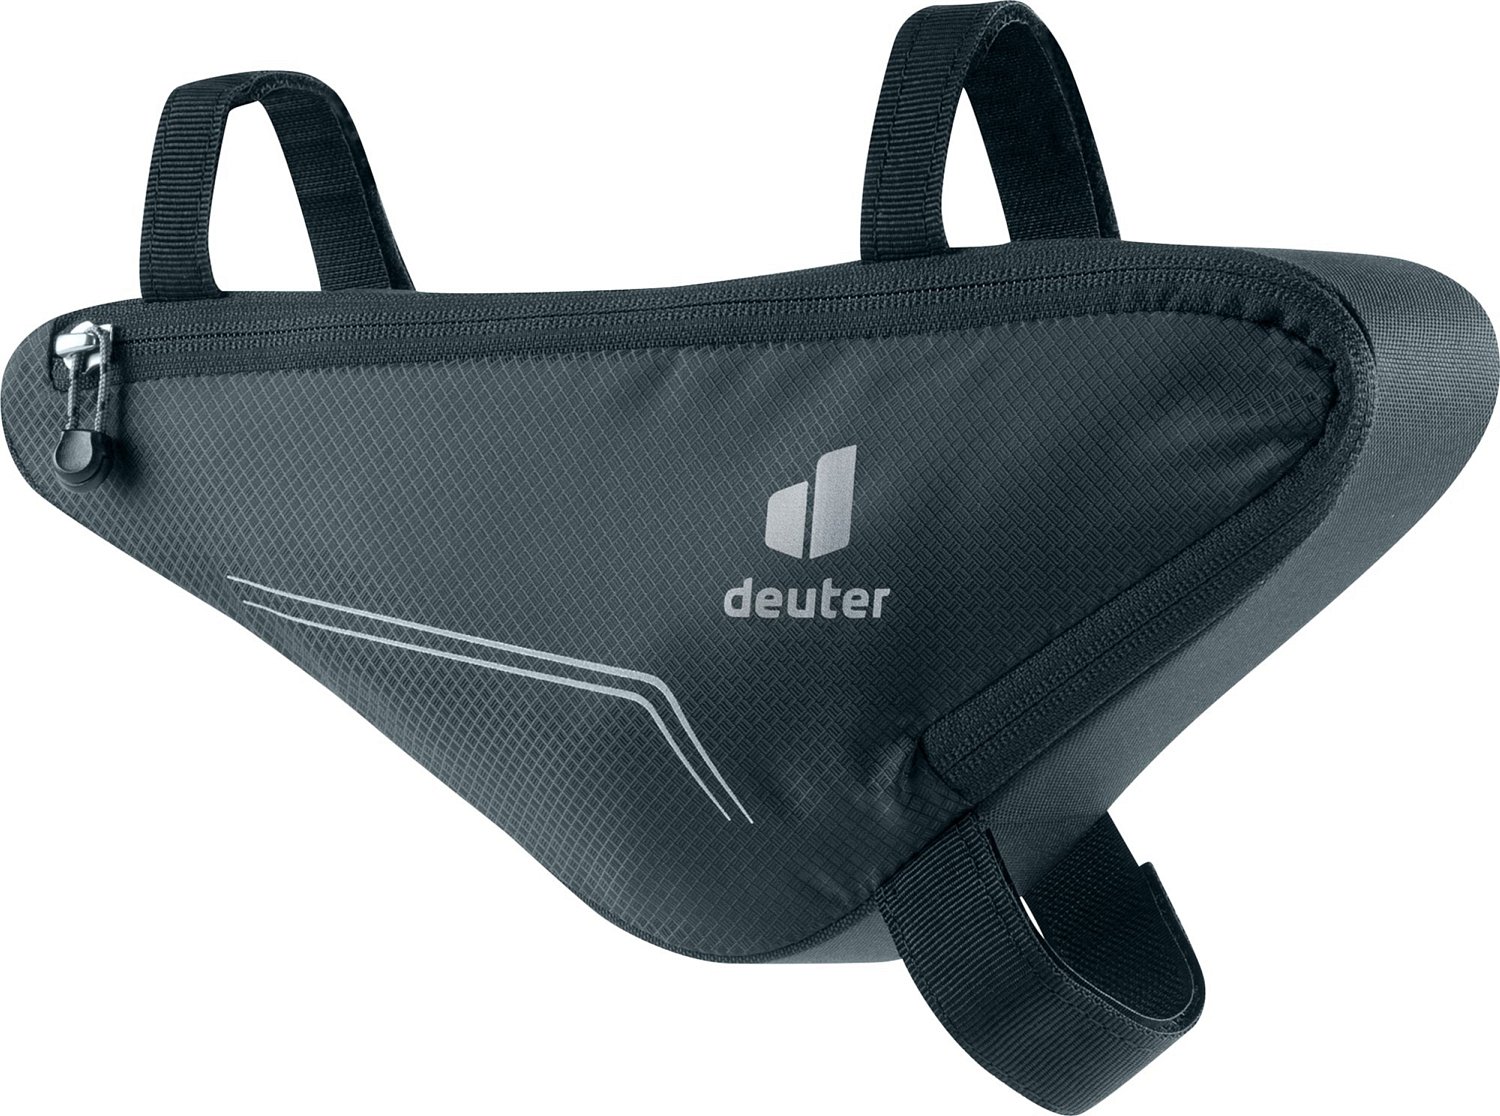 Велосумка Deuter Front Triangle Bag, 1.3 л, под раму, Black, 2021, 3290521_7000 наклейка для кия tweeten triangle 9мм 50шт